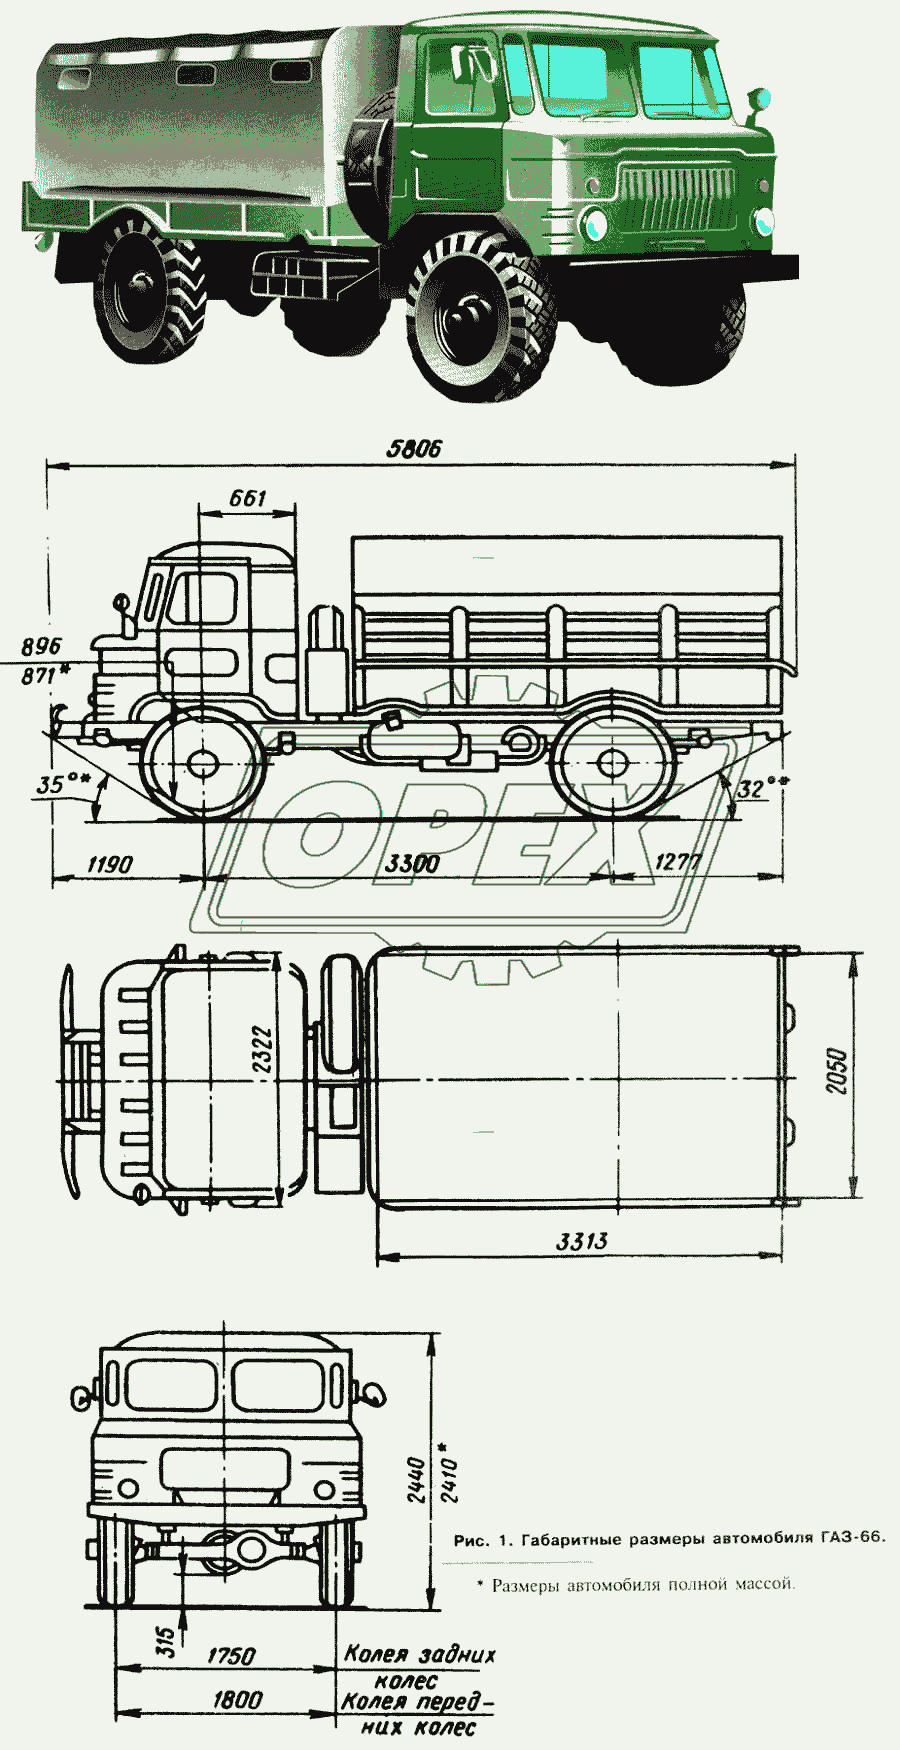 Внешний вид и габаритные размеры автомобиля ГАЗ-66